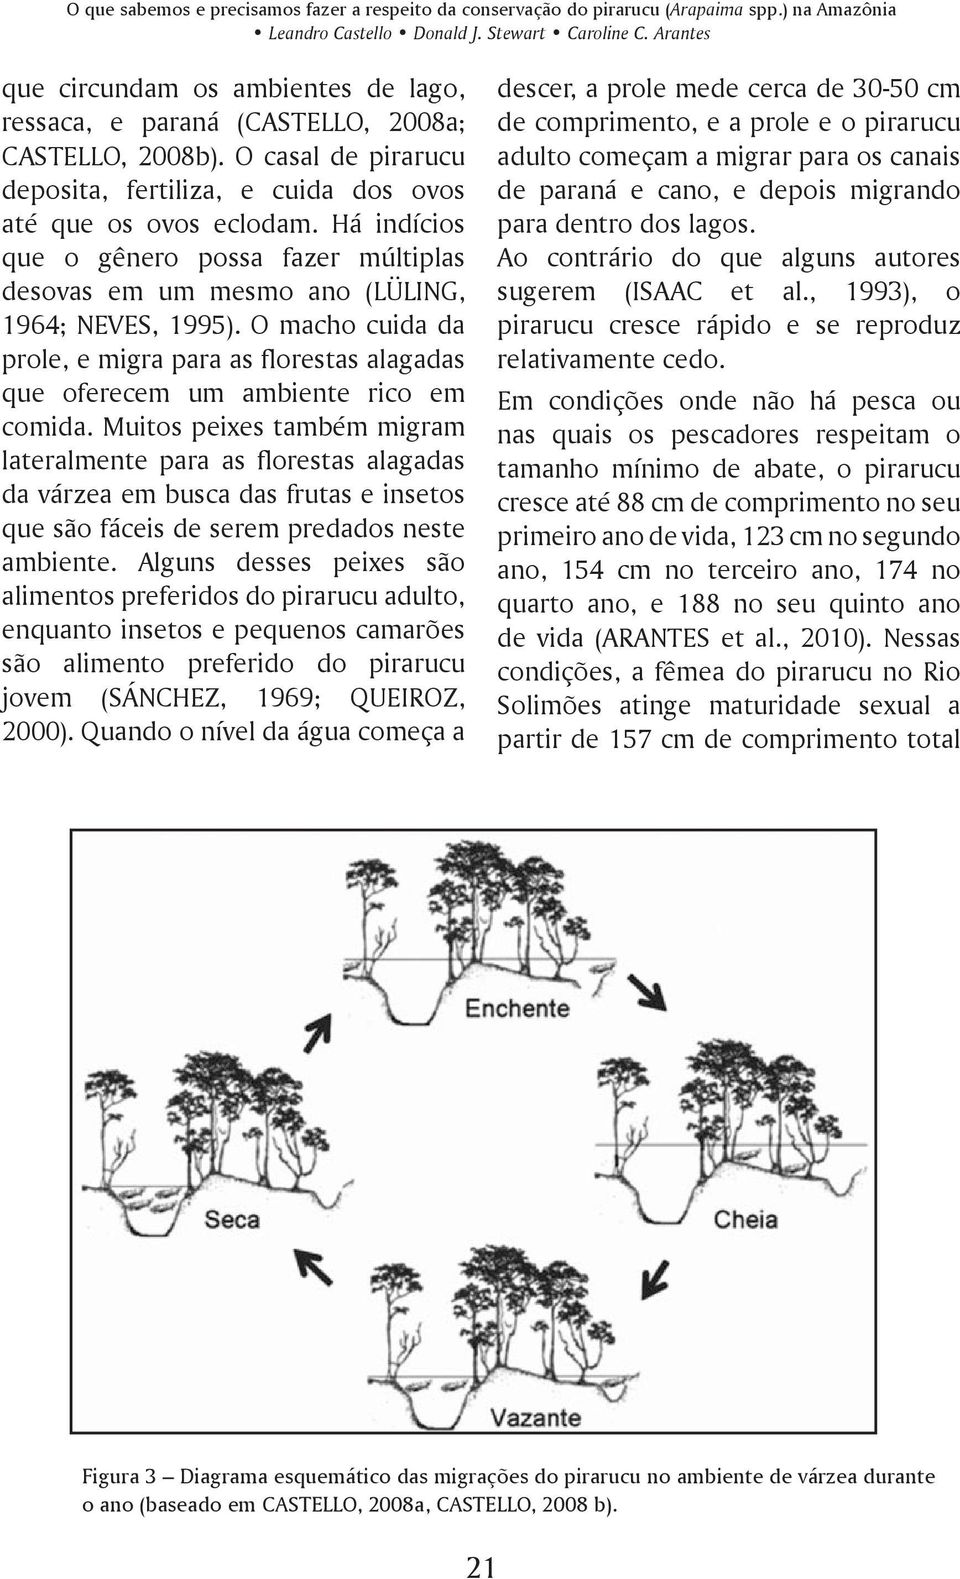 Há indícios que o gênero possa fazer múltiplas desovas em um mesmo ano (LÜLING, 1964; NEVES, 1995). O macho cuida da prole, e migra para as florestas alagadas que oferecem um ambiente rico em comida.